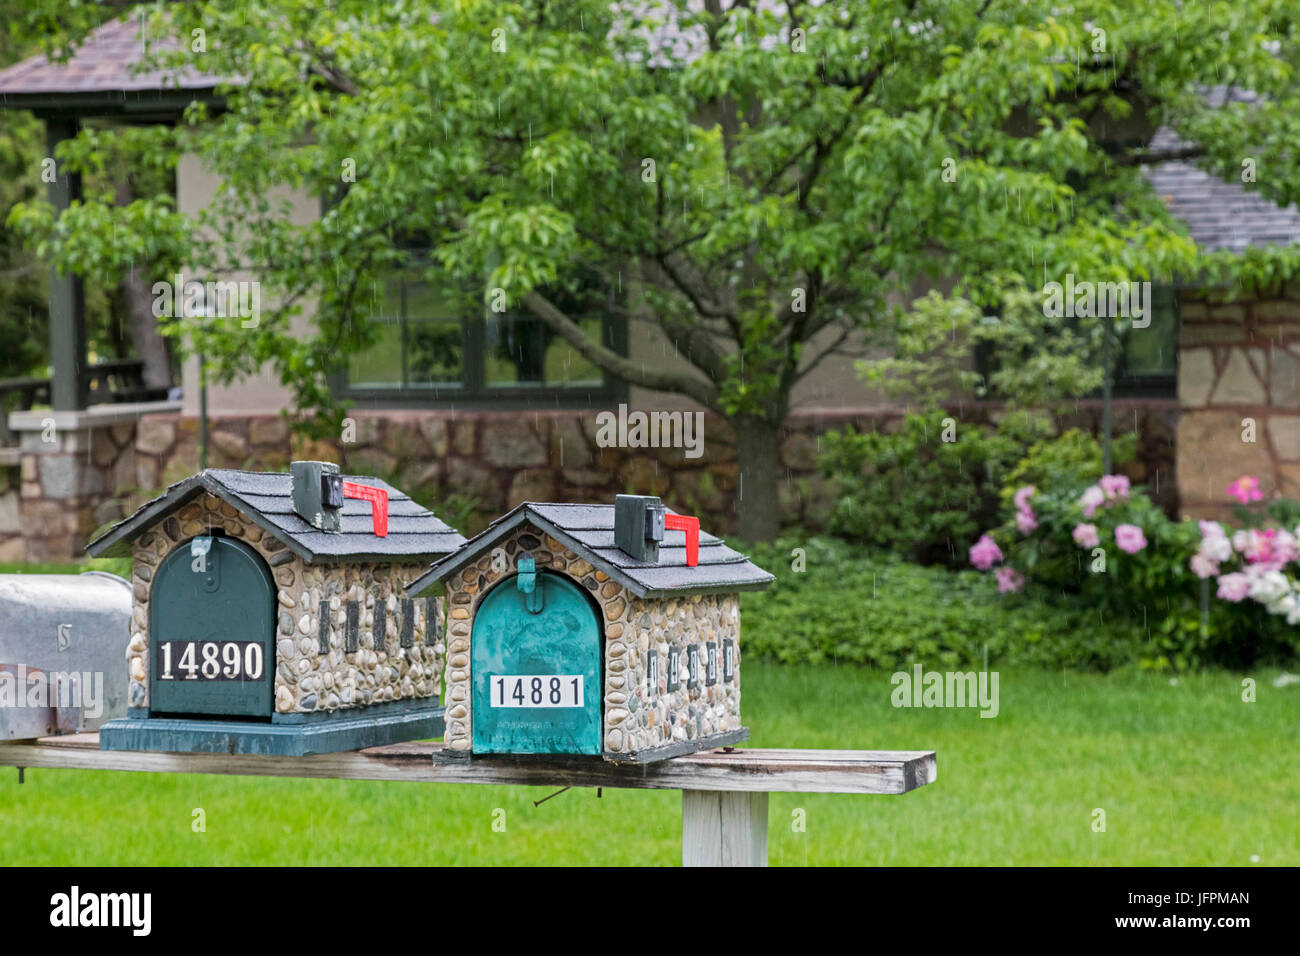 Charlevoix, Michigan - Boîtes aux lettres près de certains des deux douzaines de maisons "champignon" conçu par Earl Young, qui disposent de lignes ondulantes et utilisation intensive Banque D'Images